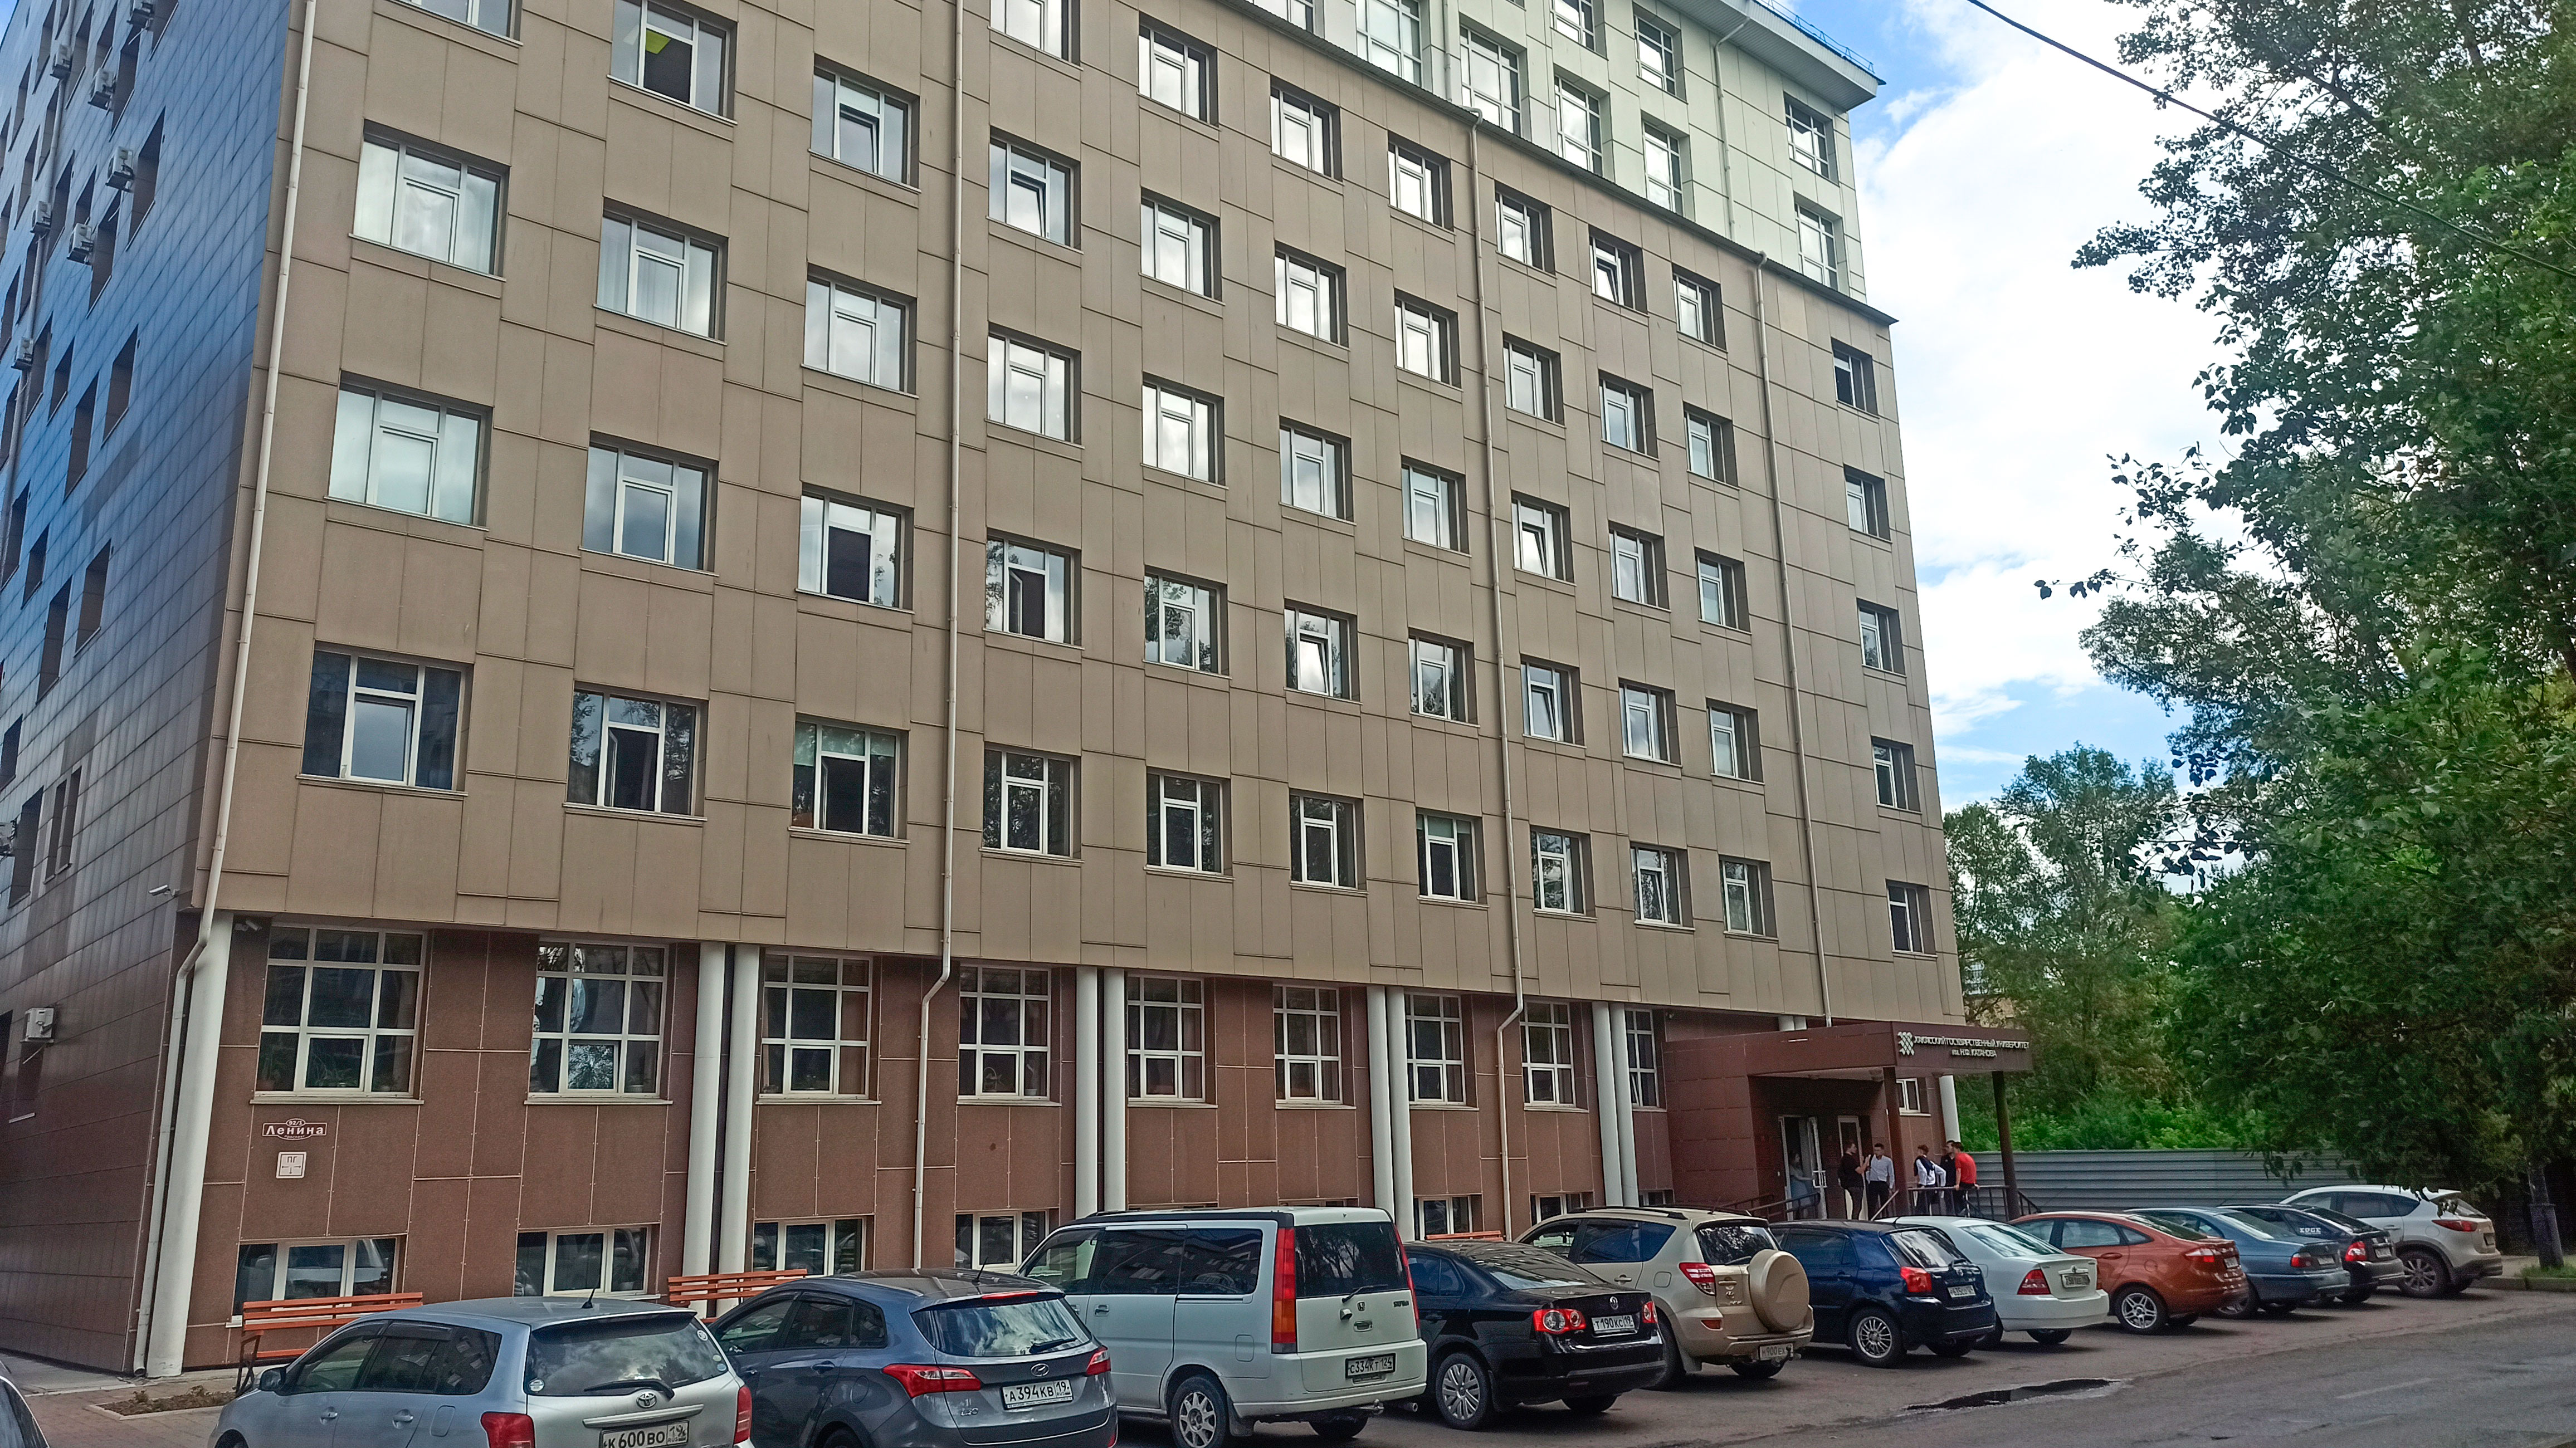 Фасад здания: Институт истории и права ХГУ г. Абакан.